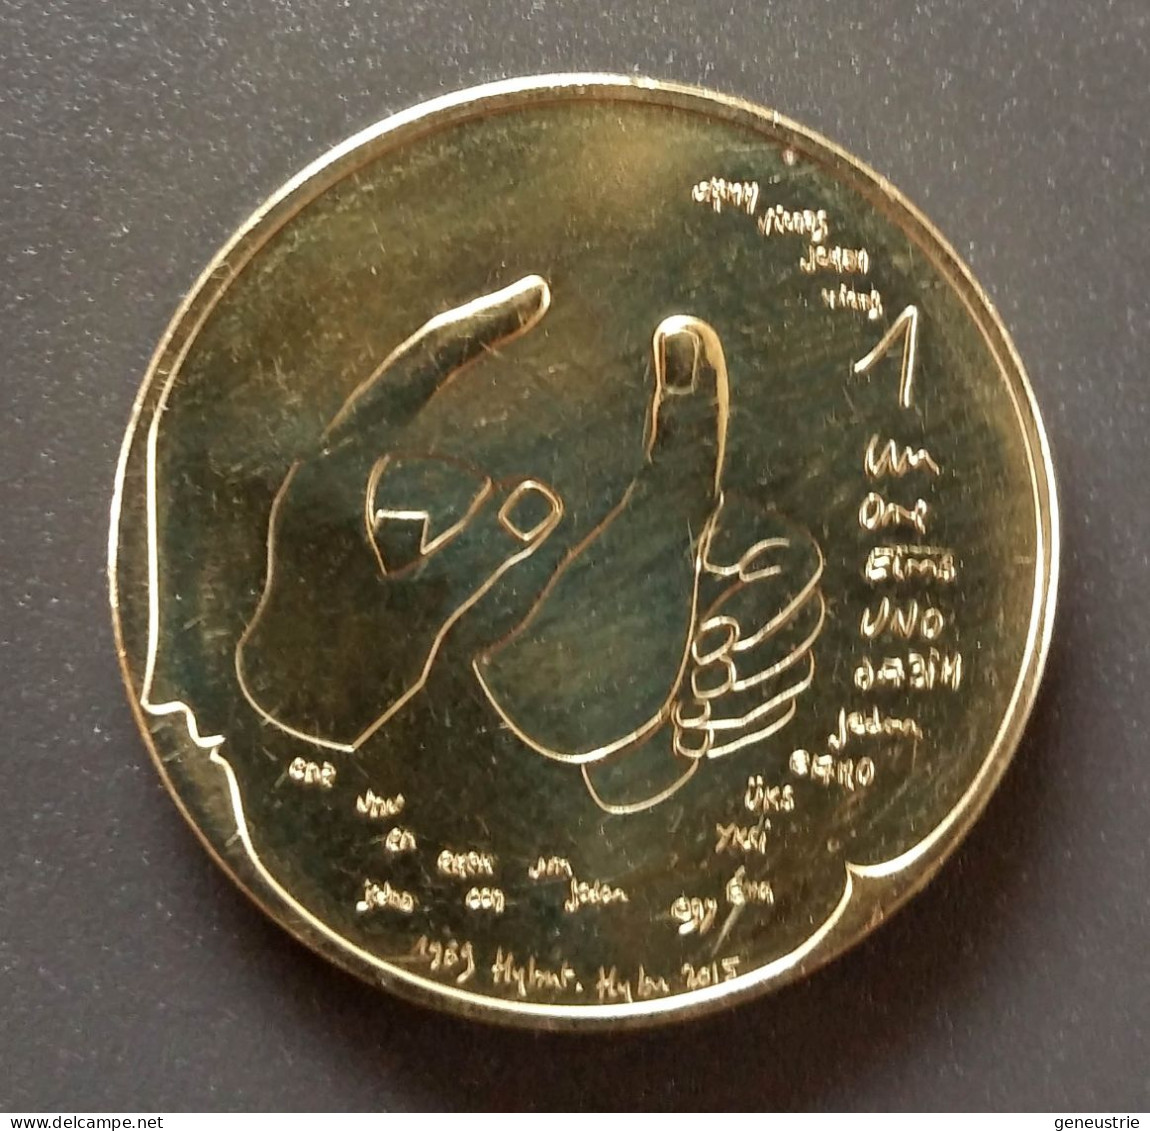 Rare Pièce Bimetallique De 1 ECU = 1 Euro De Fabrice Huber 2015 - Monnaie De Paris - Euro - Euros Of The Cities